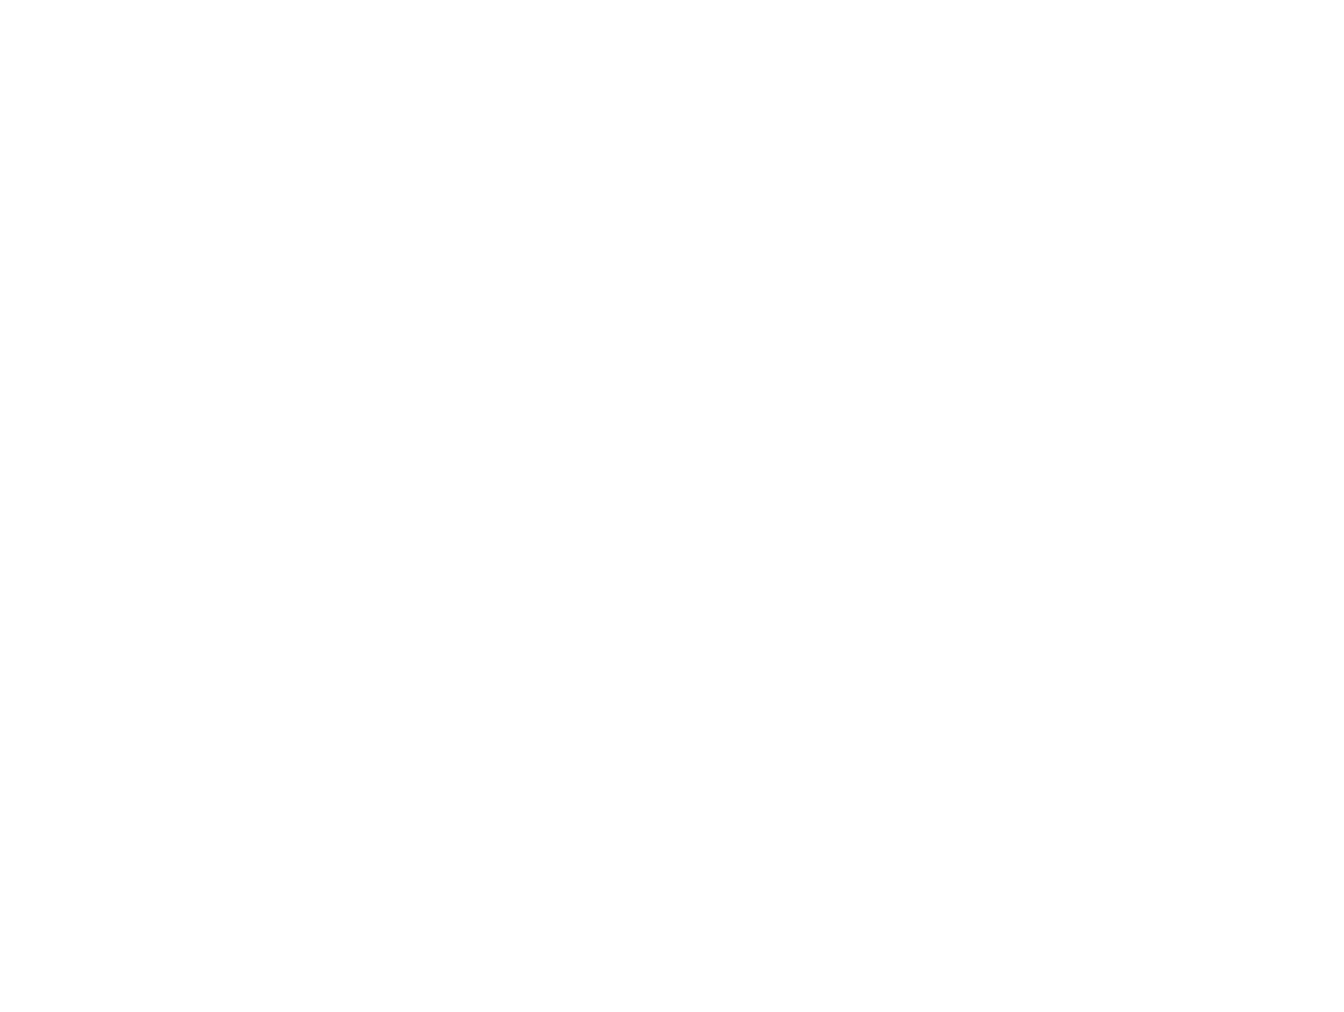 APSSP